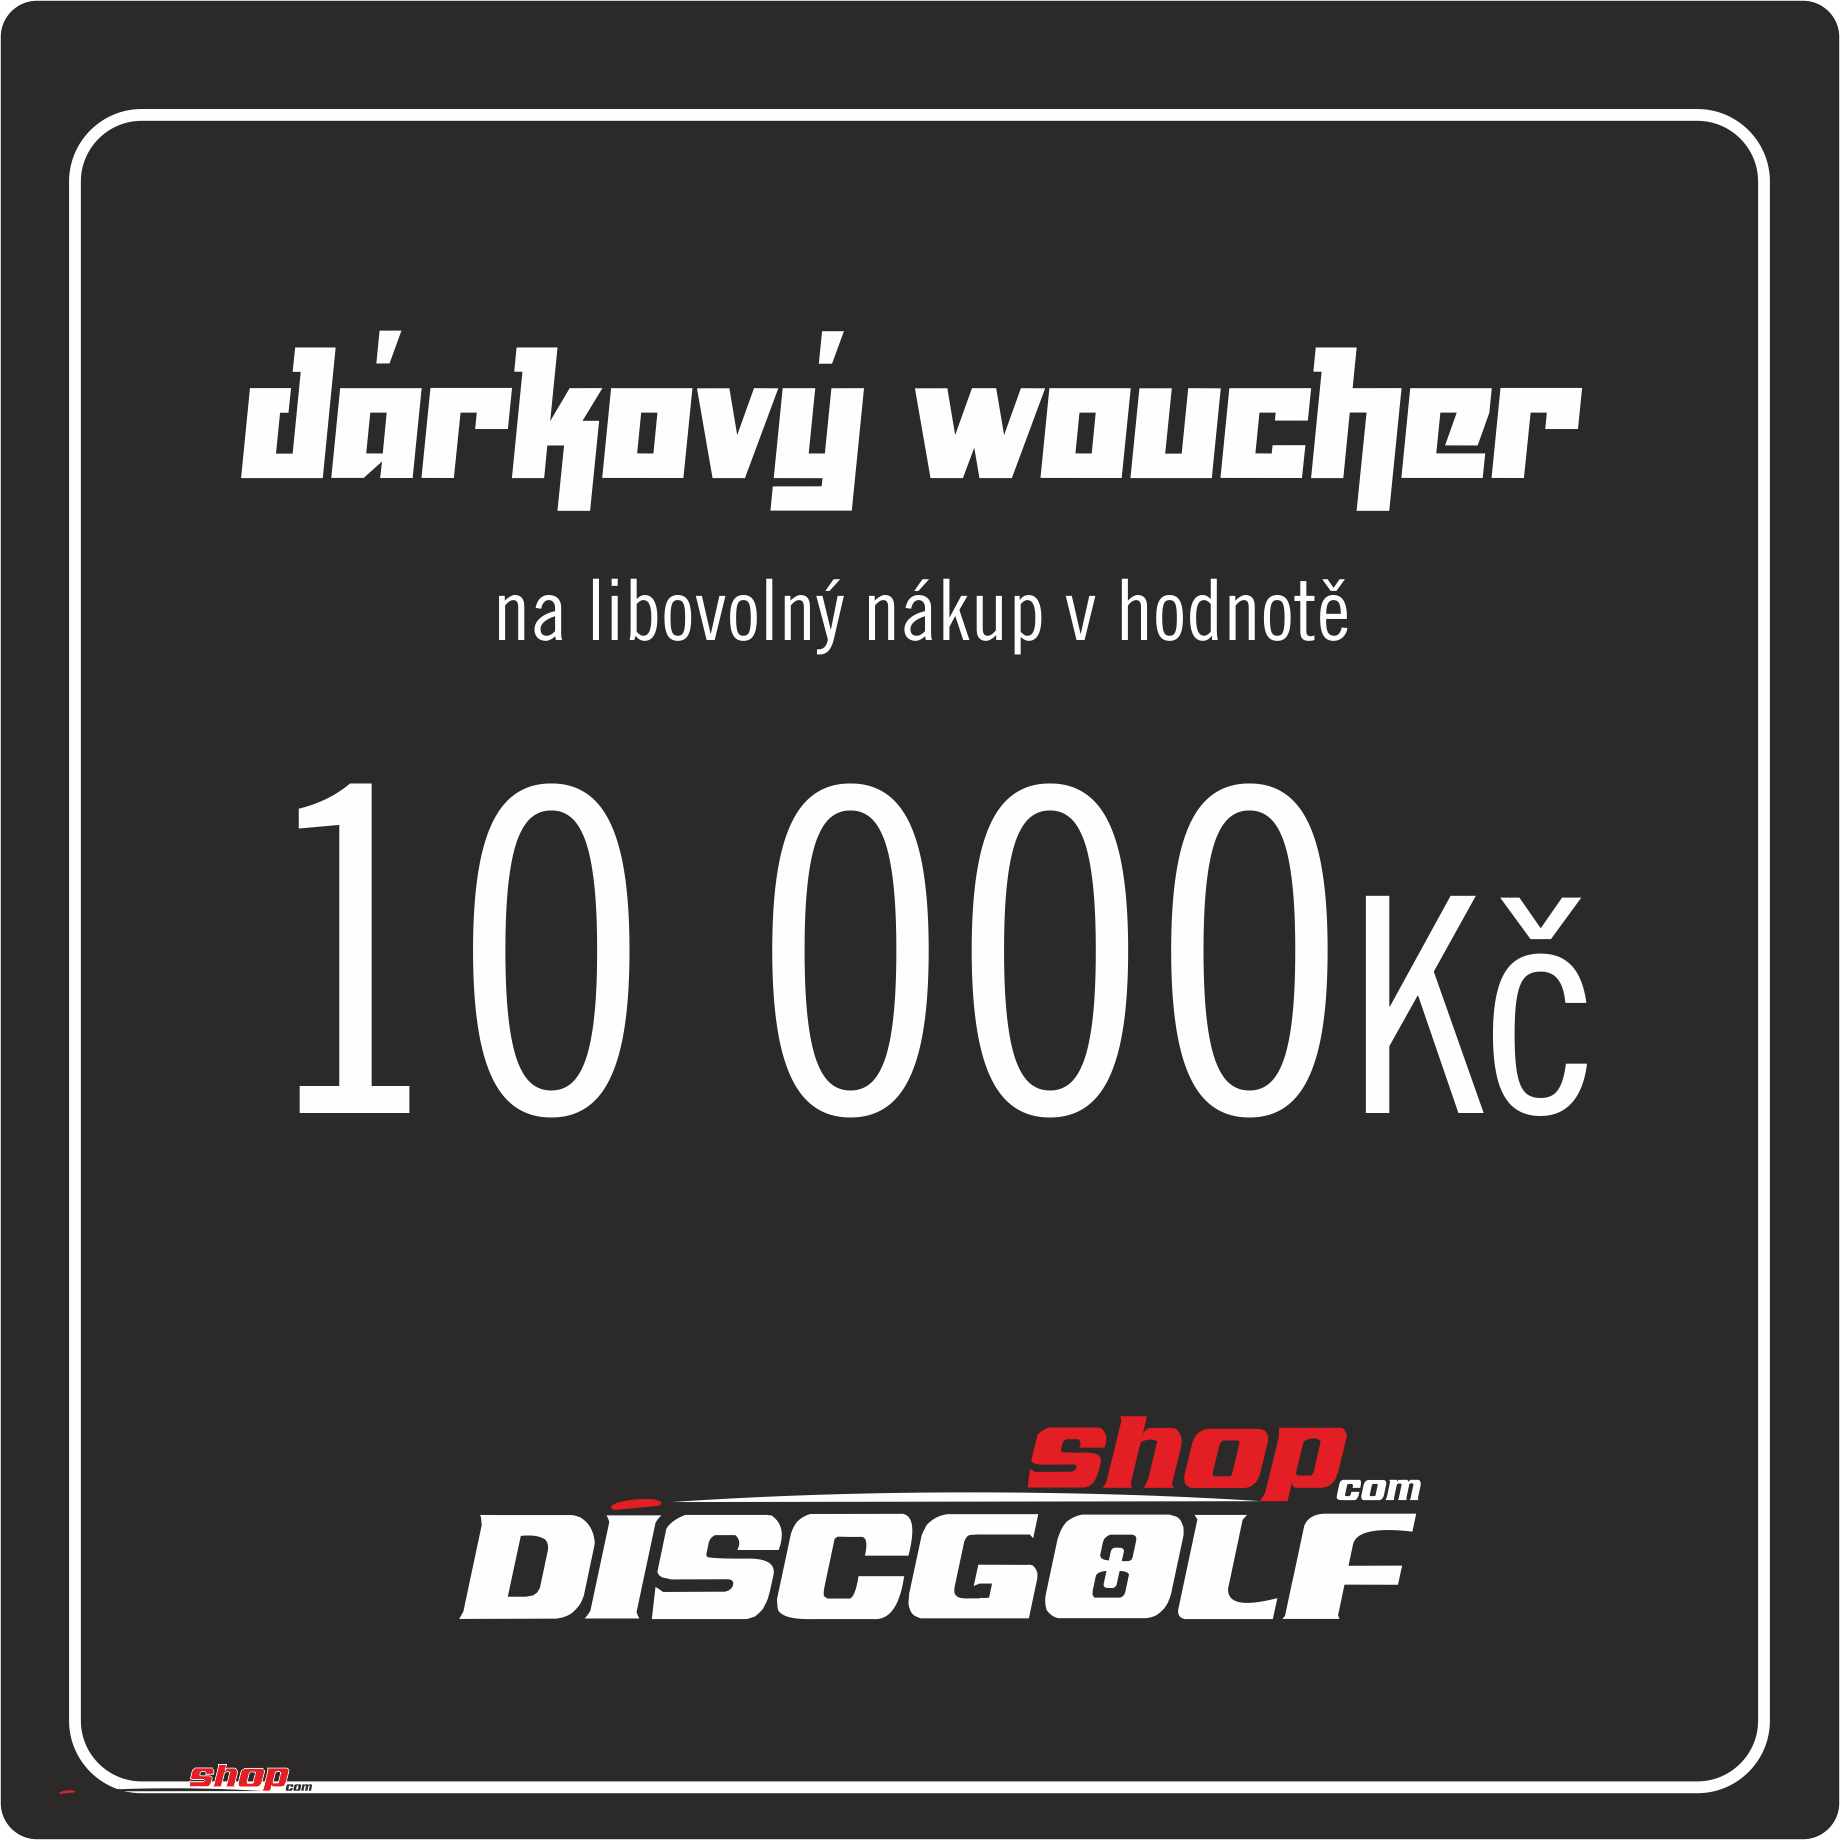 Dárkový woucher - kupon 10000Kč (discgolf)